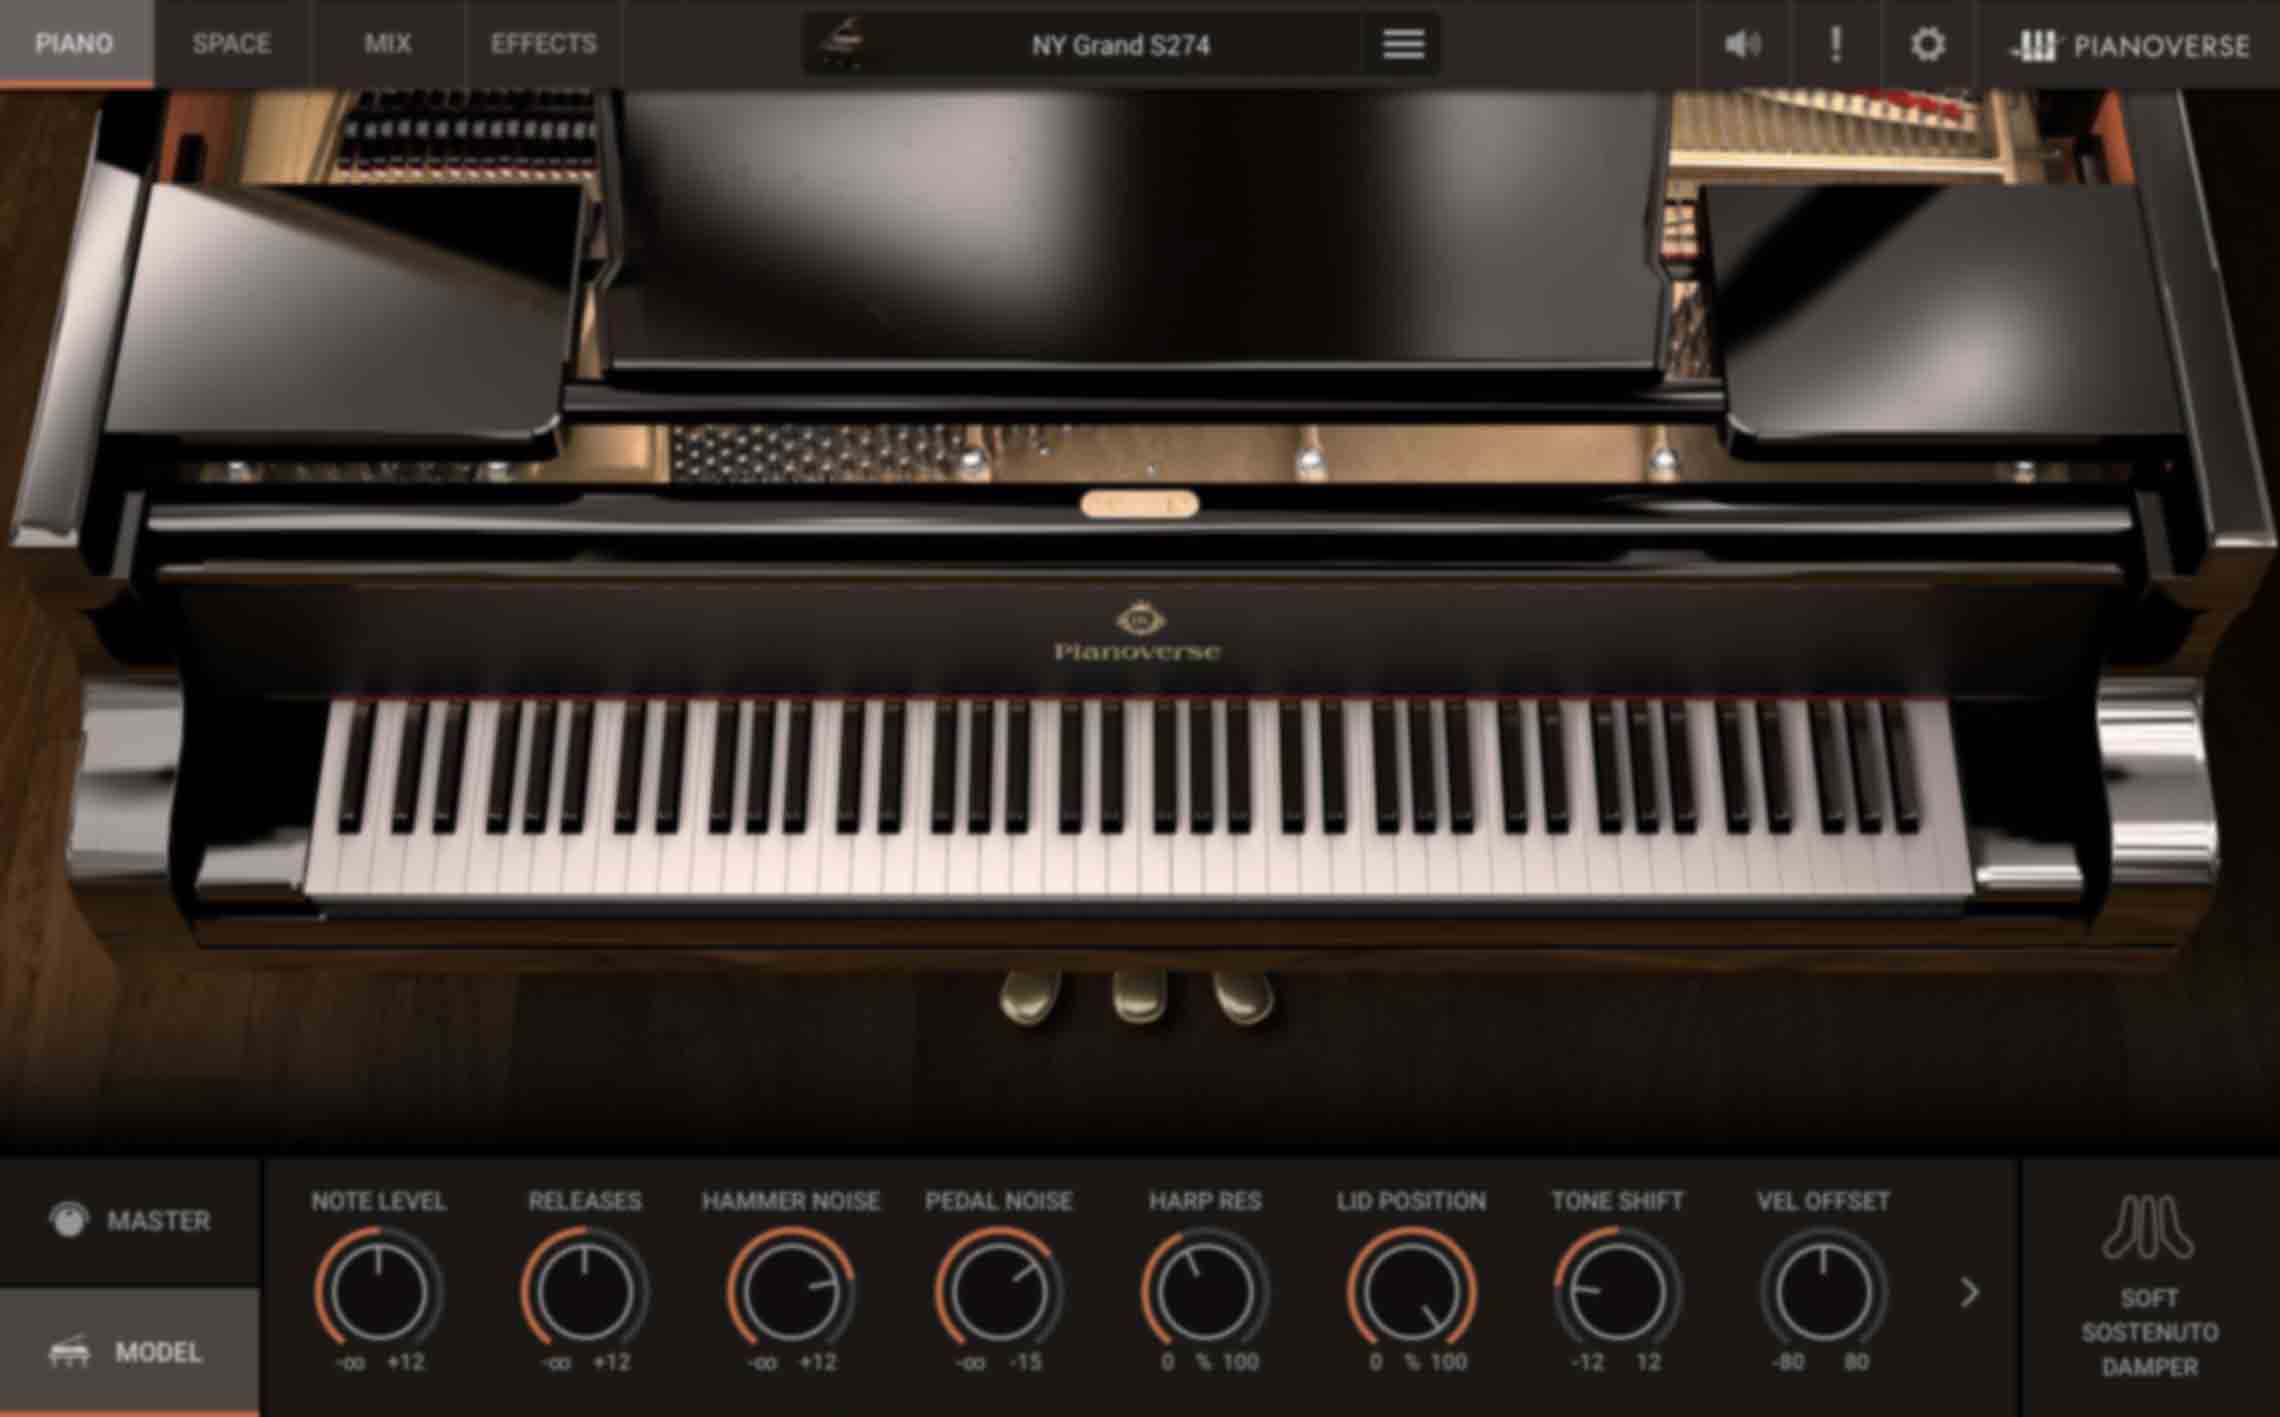 PIANO 画面/MODEL - ピアノ・モデルごとの特性に応じた高度なコントロールを表示